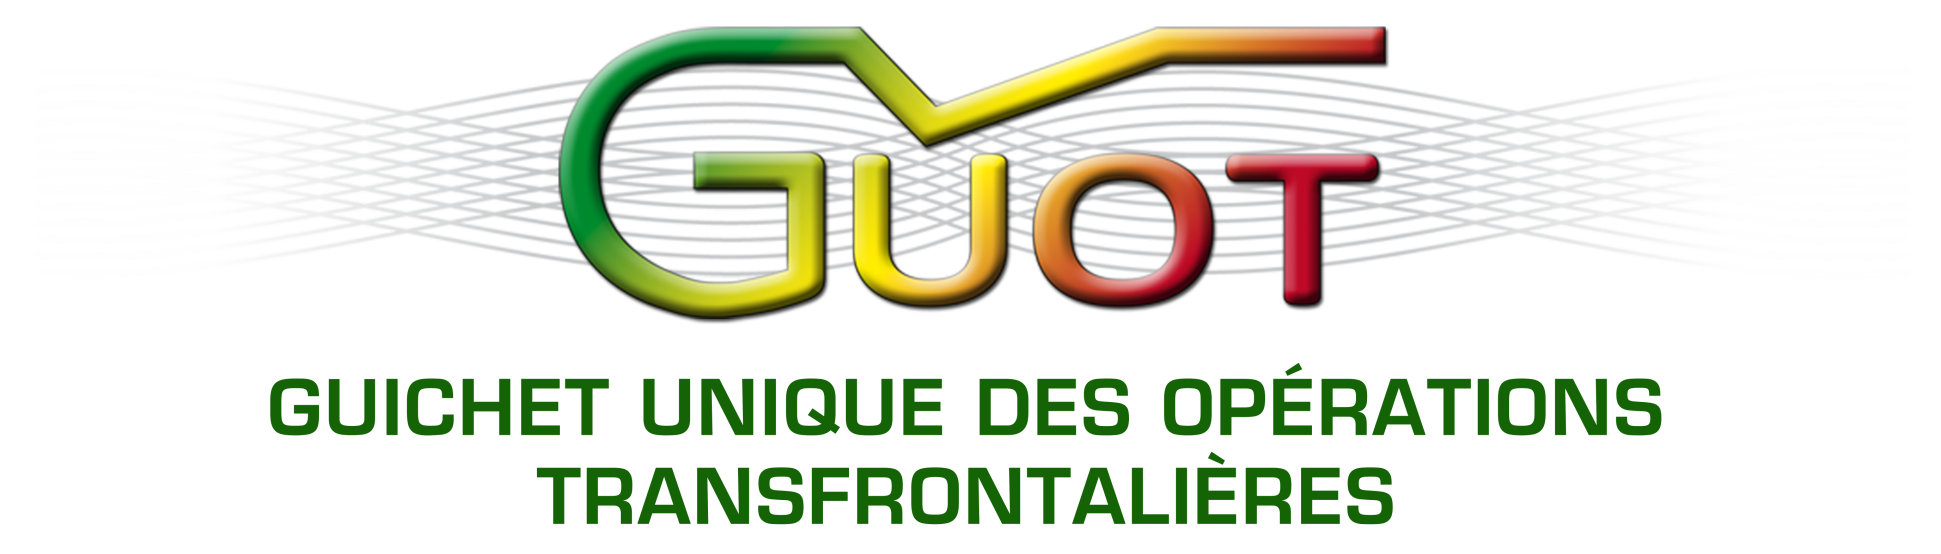 Guichet Unique des Opérations Transfrontalières (GUOT)